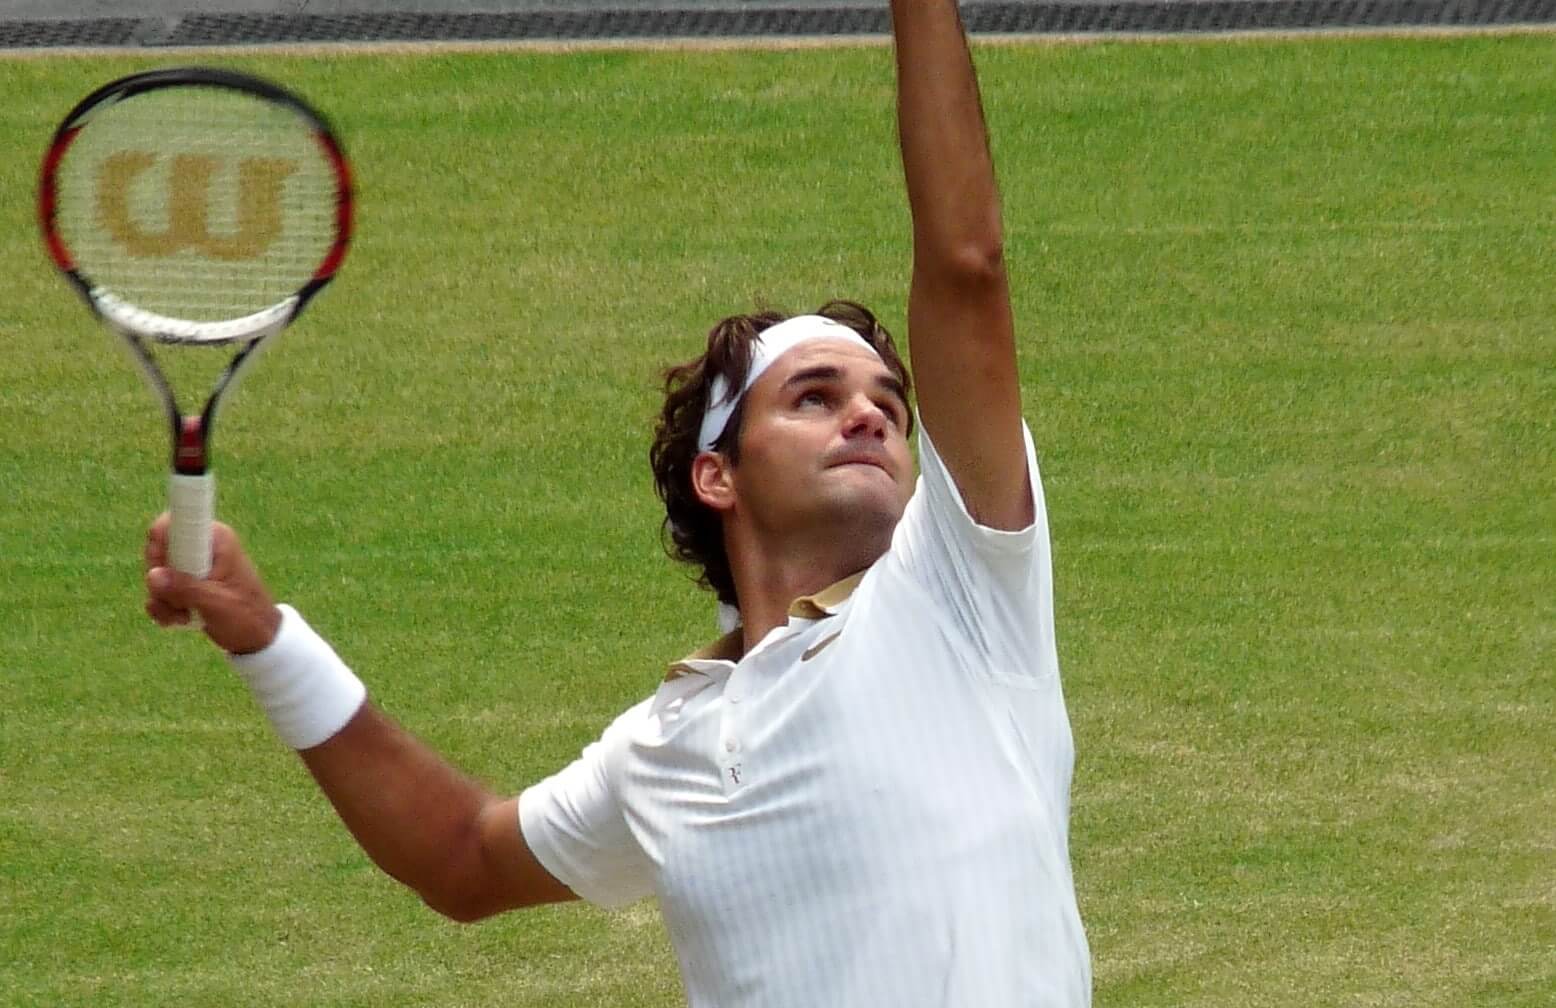 Roger Federer - Dominic Thiem | Live Stream - Vihjemedia1556 x 1008